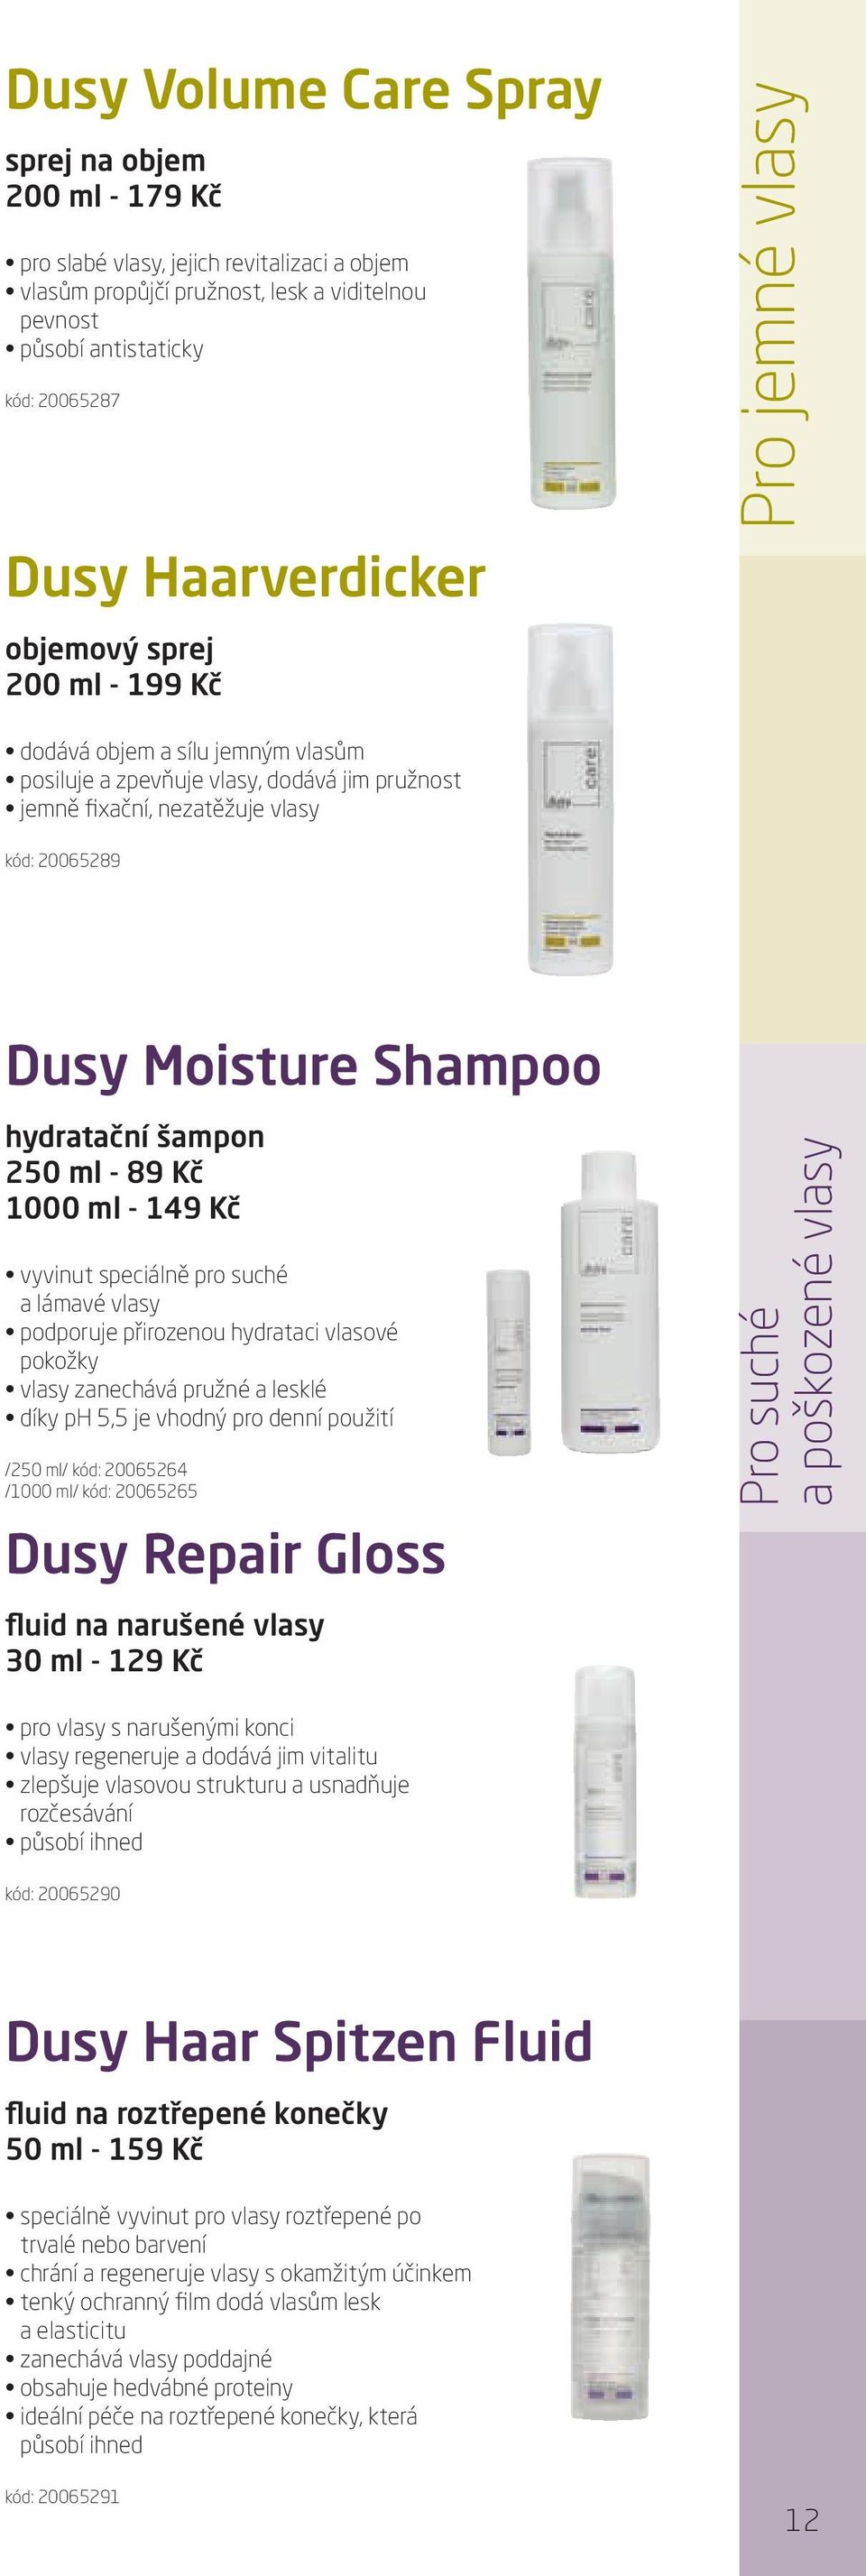 Moisture Shampoo hydratační šampon 250 ml - 89 Kč 1000 ml - 149 Kč vyvinut speciálně pro suché a lámavé vlasy podporuje přirozenou hydrataci vlasové pokožky vlasy zanechává pružné a lesklé díky ph